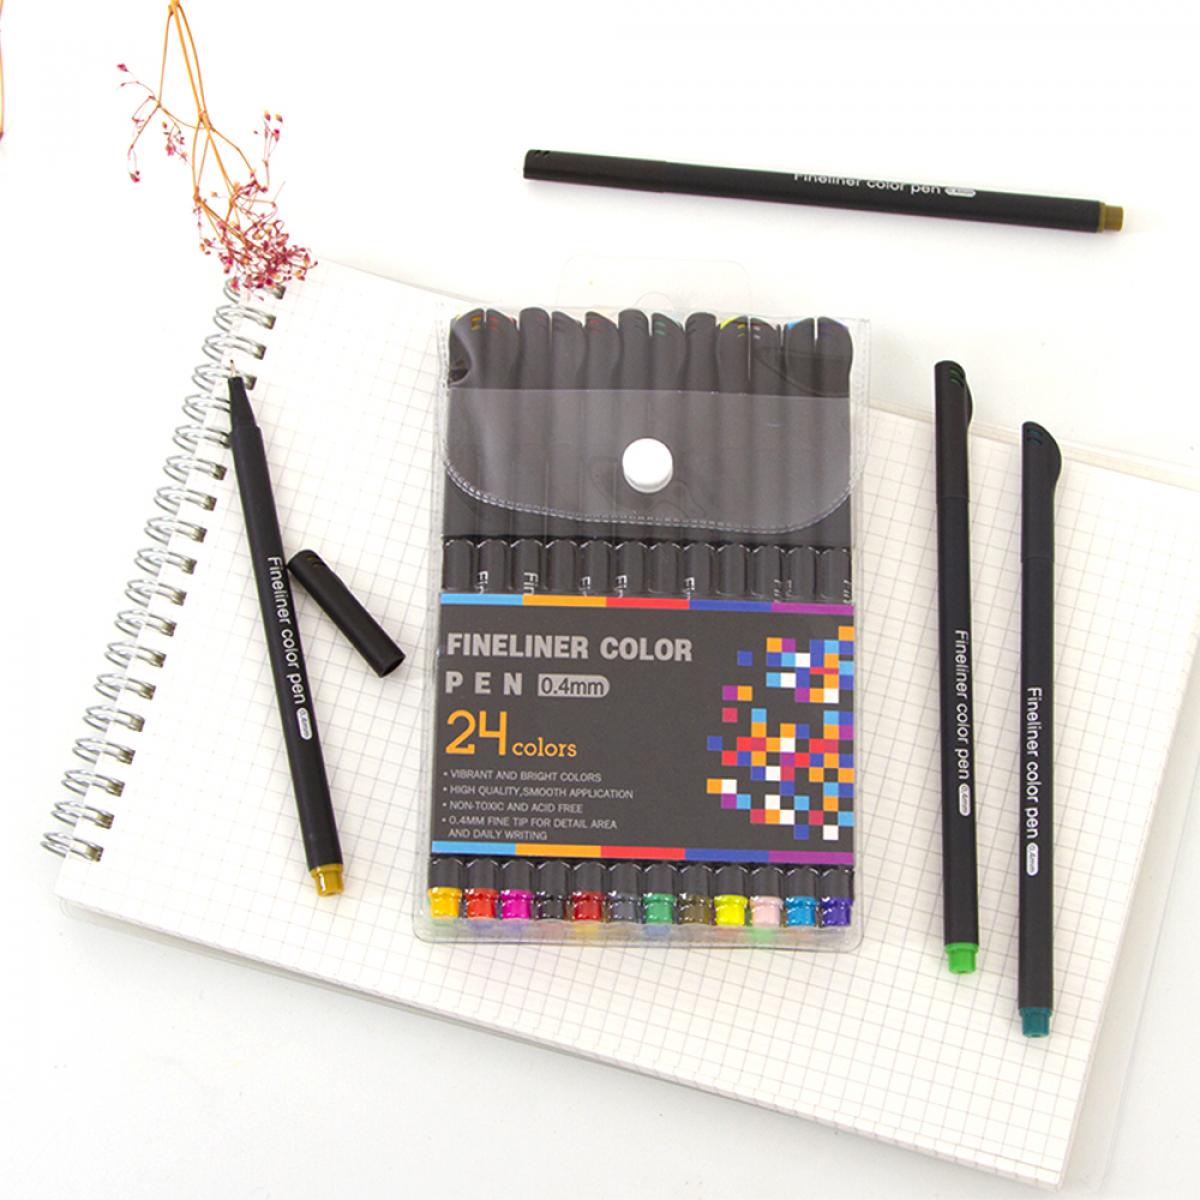 Set di 24 penne professionali COLOR FINELINER punta fine 0,4 mm. Colori definiti e brillanti per contorni, illustrazioni, mandala...